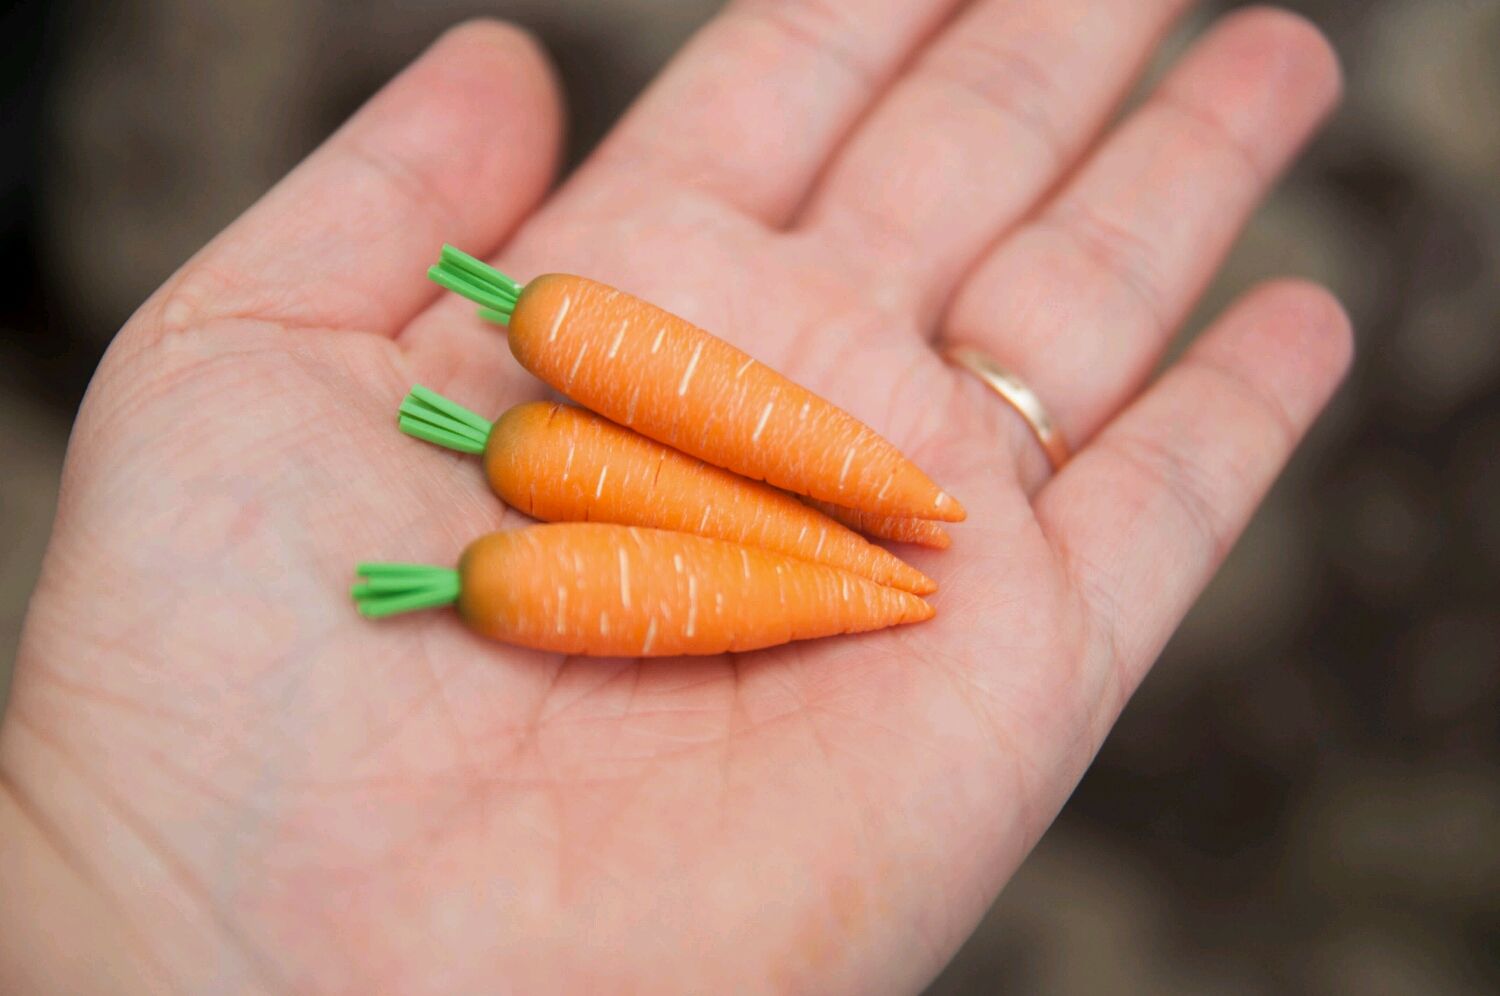 Где Можно Купить Семена Моркови